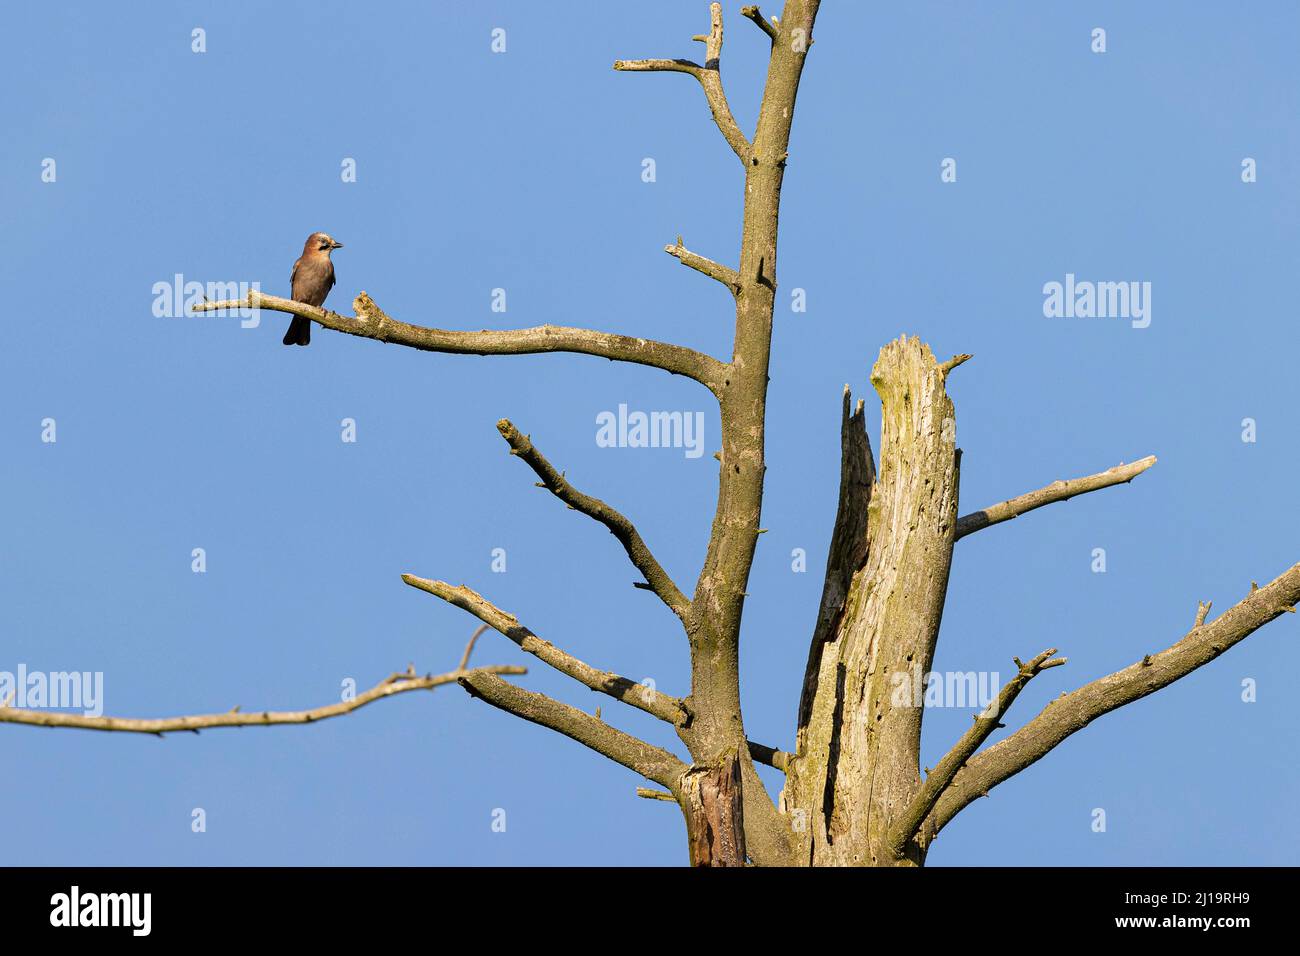 Eurasischer eichelhäher (Garrulus glandarius) sitzt auf einem Ast im toten Baum, JuodkrantÄ –, Kurische Nehrung, Klaipeda, Litauen Stockfoto